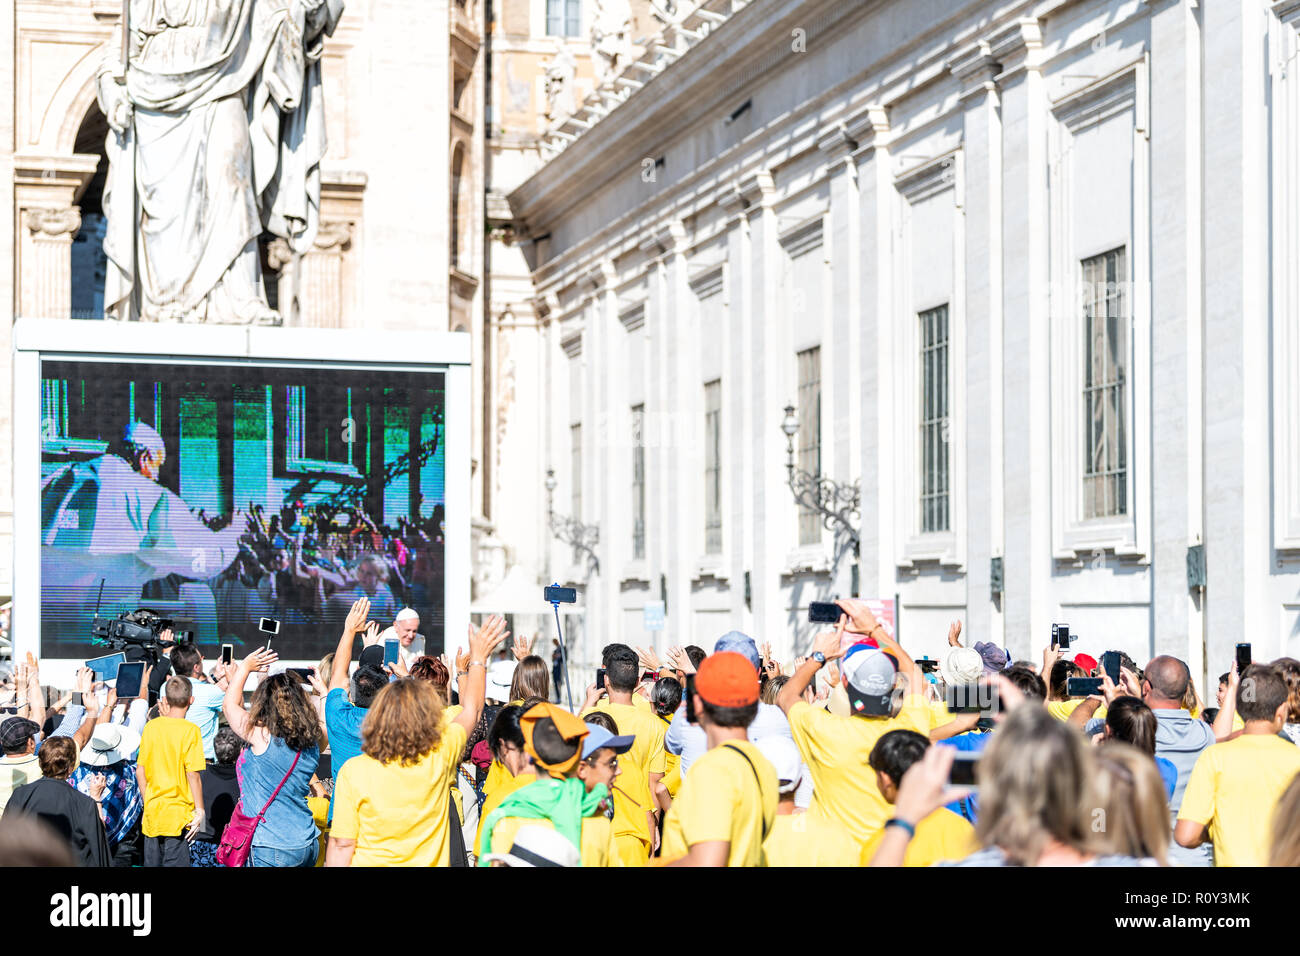 État de la Cité du Vatican - 5 septembre 2018 : Le Pape François équitation, déménagement sur voiture papale, papamobile, à l'audience générale avec foule, gens des signes avec la main, le gre Banque D'Images